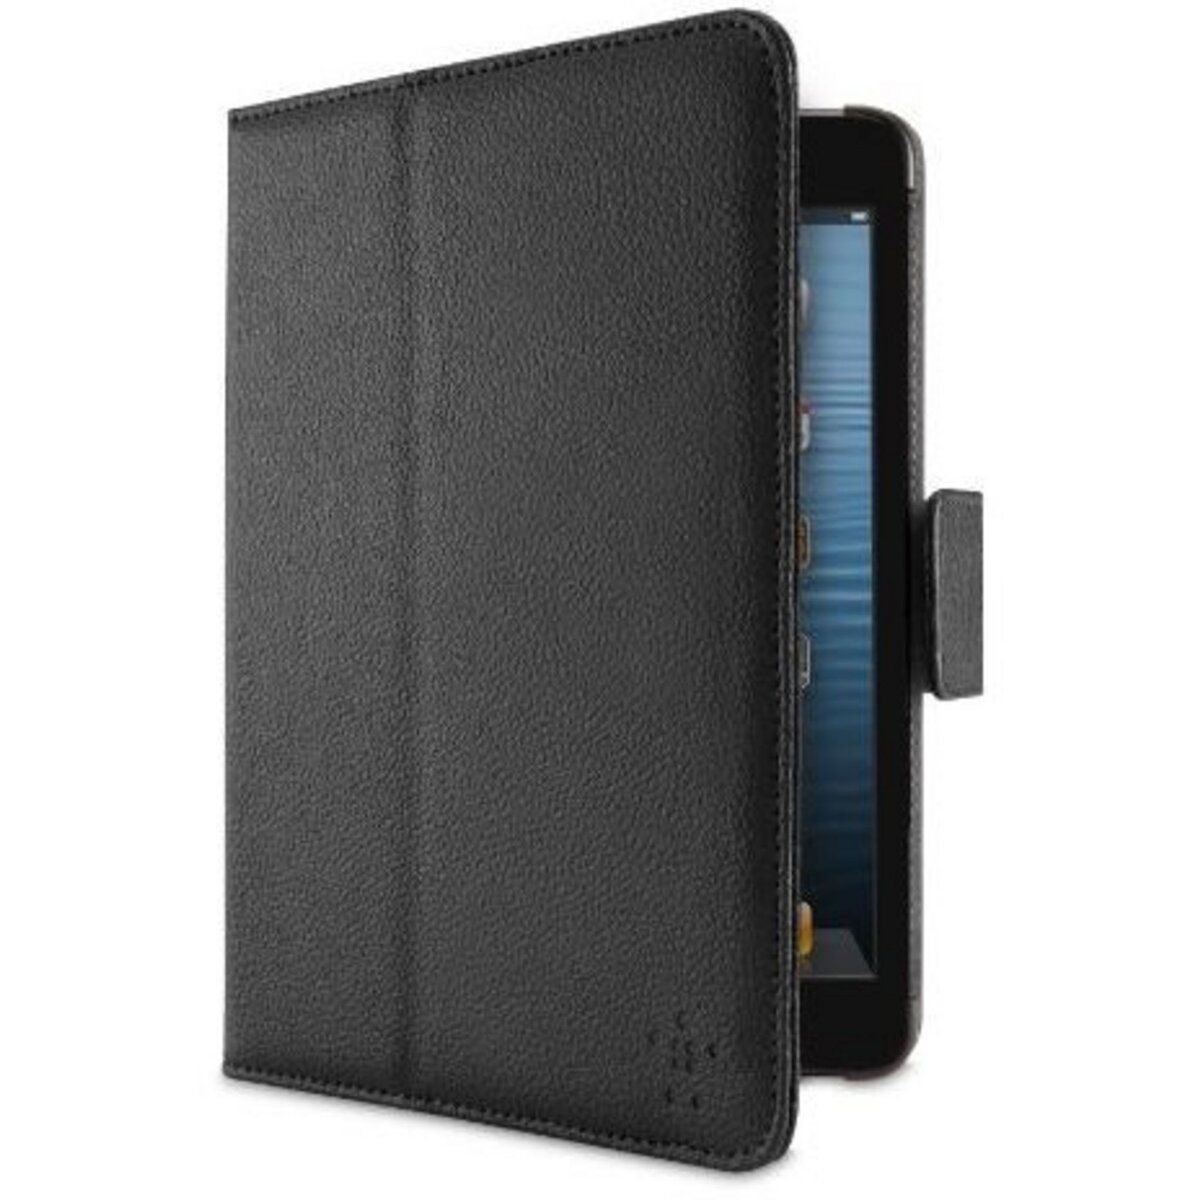 BELKIN Accessoire tablette tactile Folio iPad mini